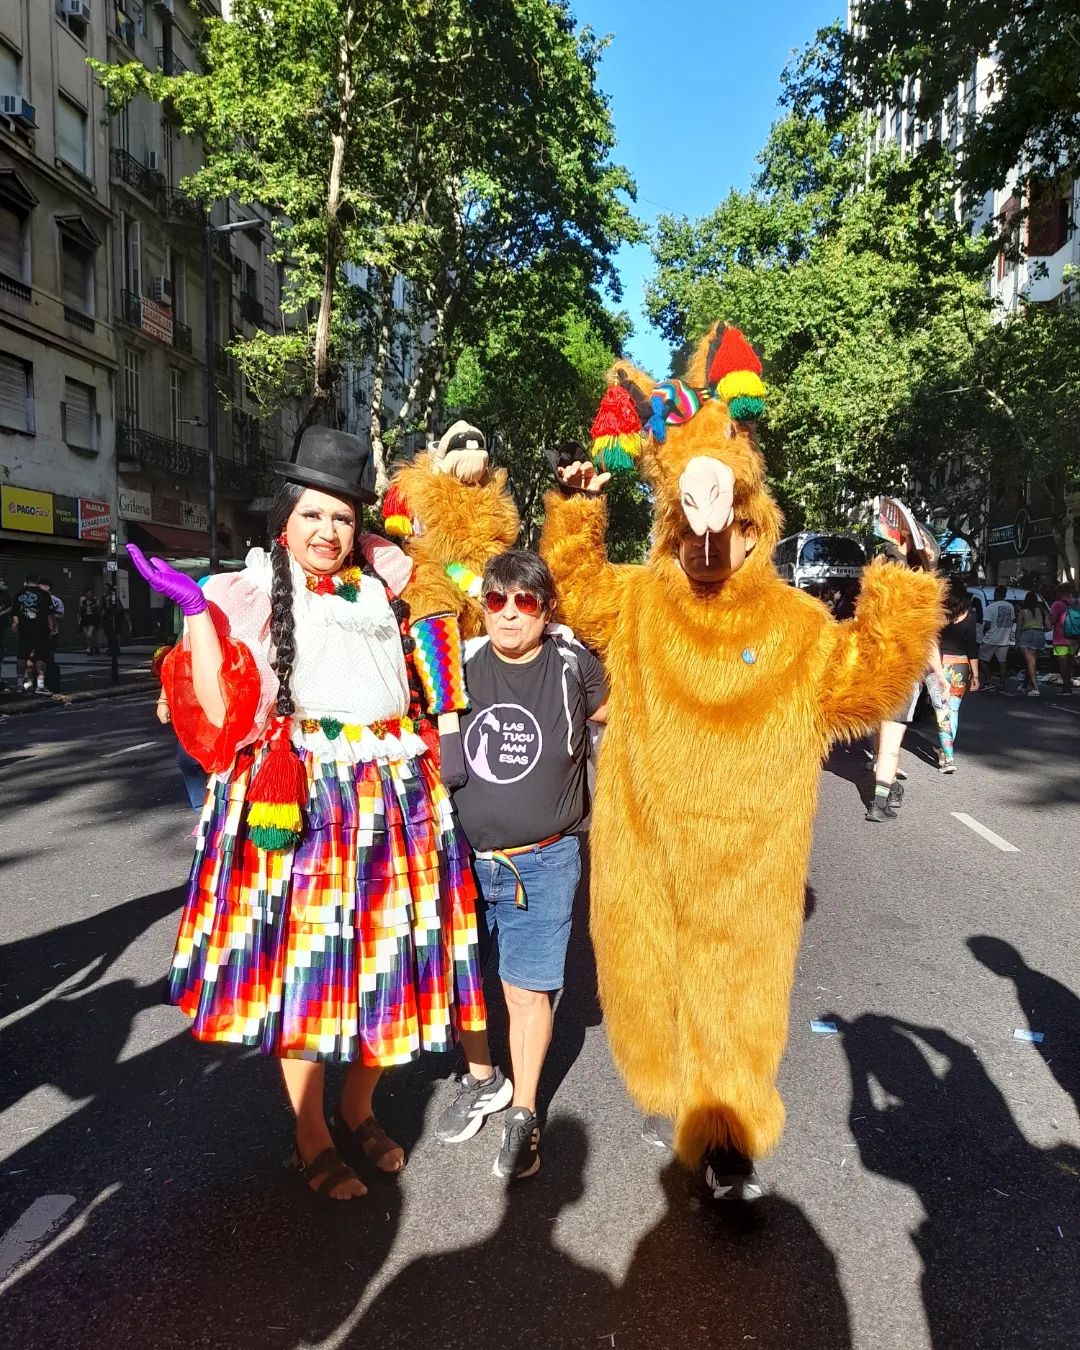 🏳️‍🌈🏳️‍⚧️🌈 Marcha del Orgullo - Buenos Aires 2023 🌈🏳️‍⚧️🏳️‍🌈

Acompañando como siempre la movilización, la alegría  y la memoria. 

#marchadelorgullo
#orgullo2023 #pride
#buenosaires #love #arcoiris